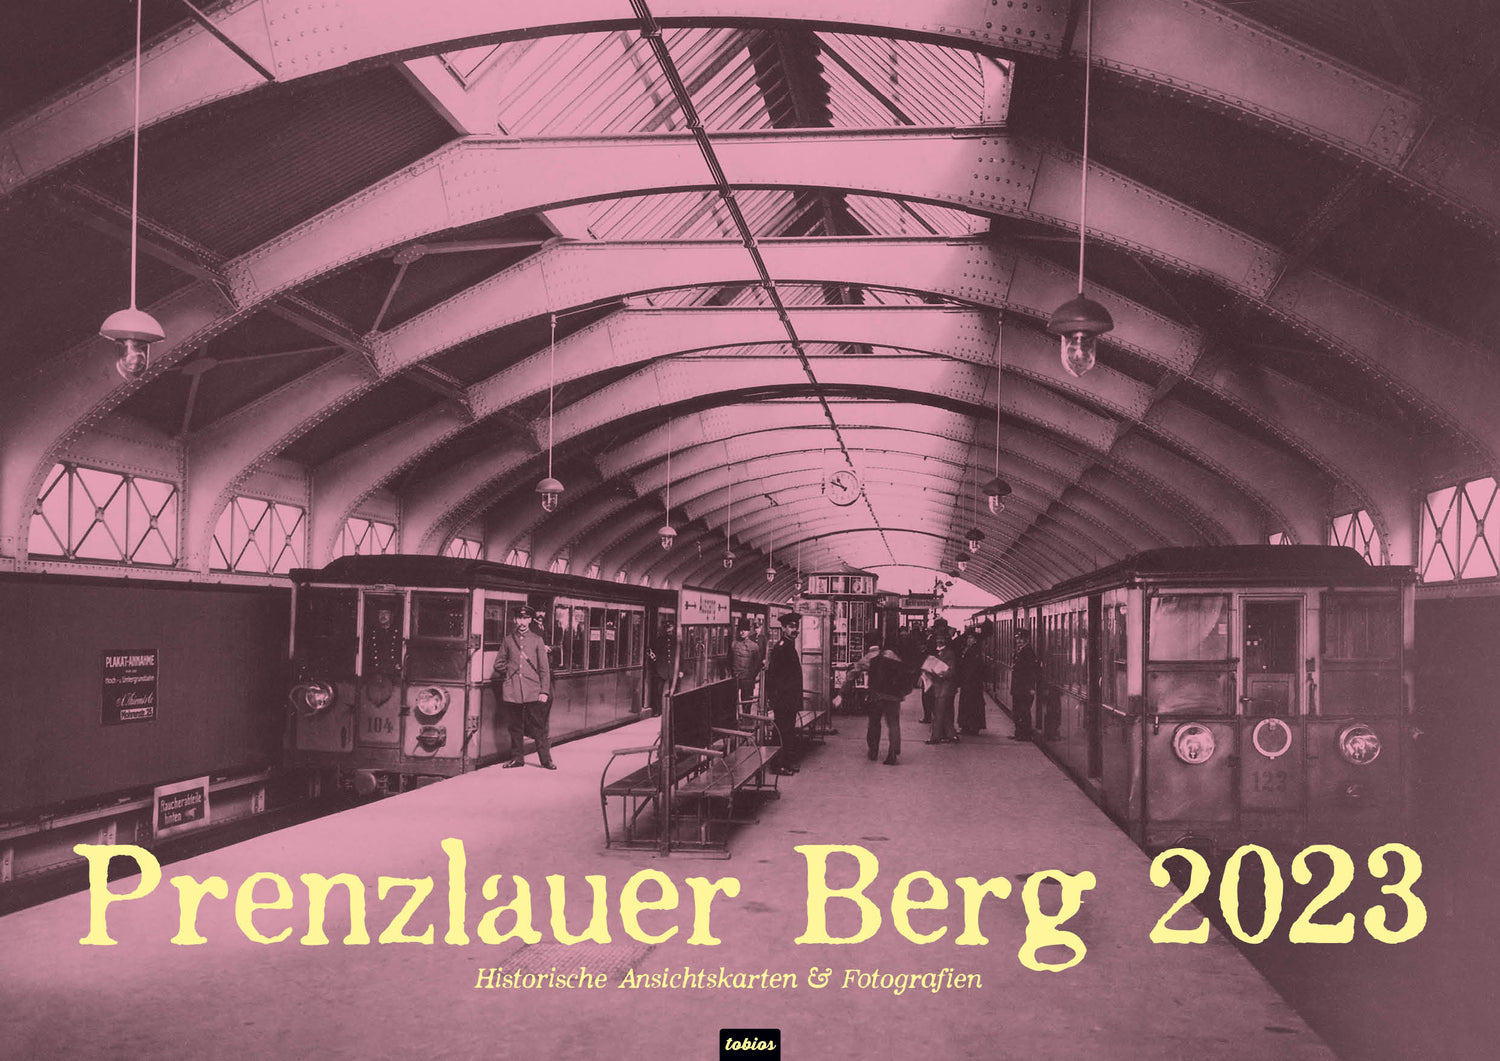 Im Hochbahnhof Schönhauser Allee [damals Nordring] · 1913. Kalender Berlin Prenzlauer Berg 2023 DIN A 3 Historische Ansichtskarten und Fotografien - Titelblatt. tobios publishing. ISBN 978-3-948297-11-4